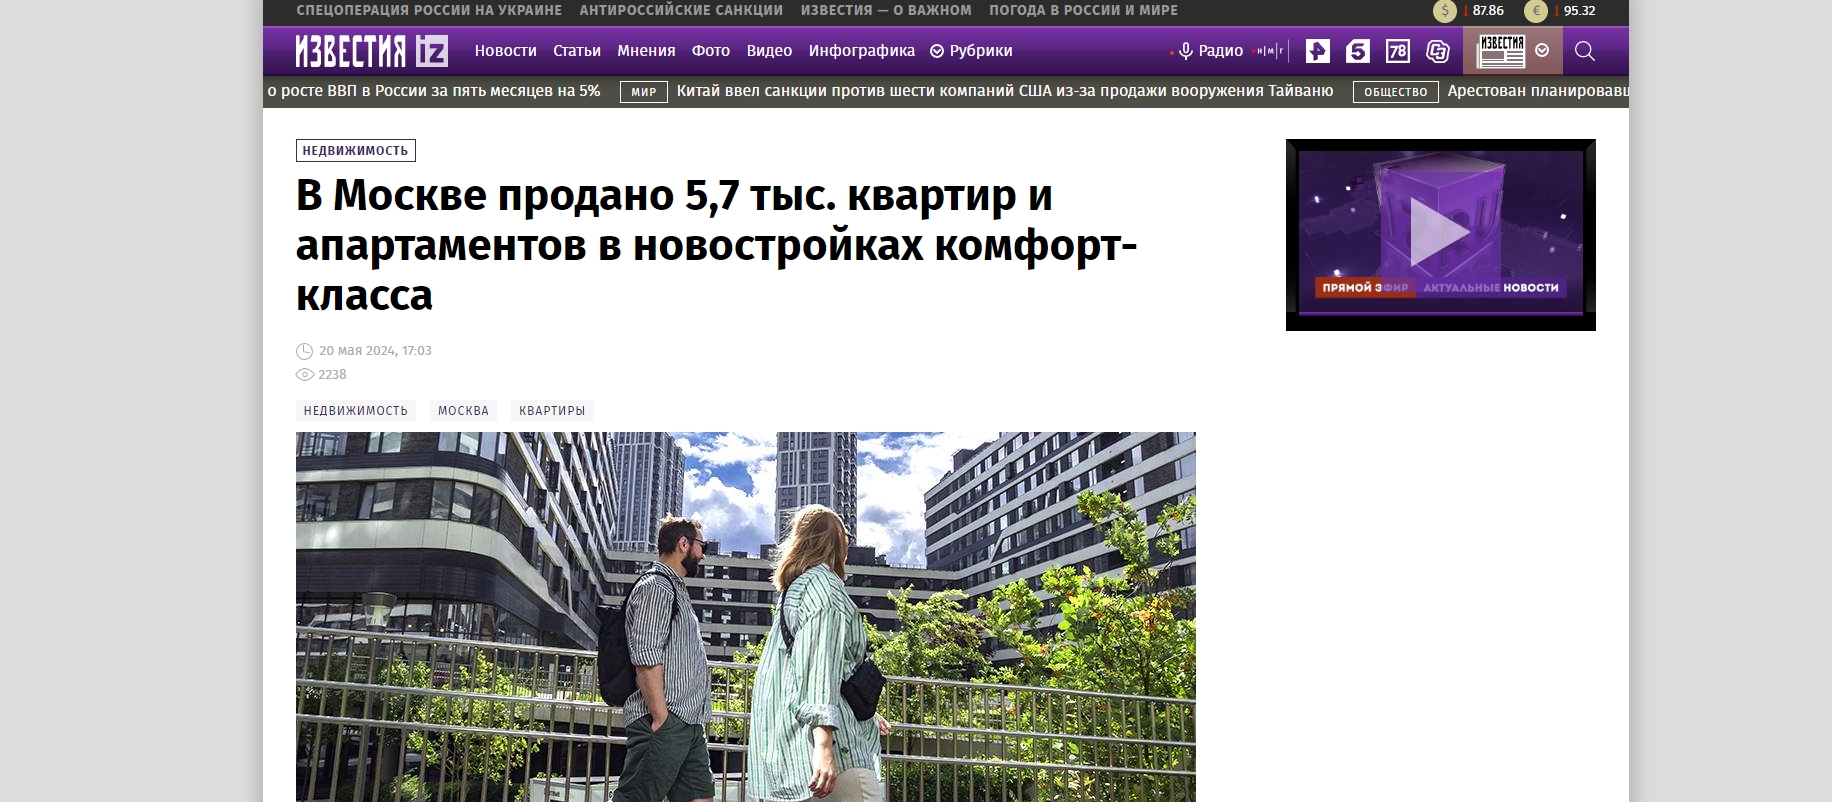 В Москве продано 5,7 тыс. квартир и апартаментов в новостройках комфорт-класса